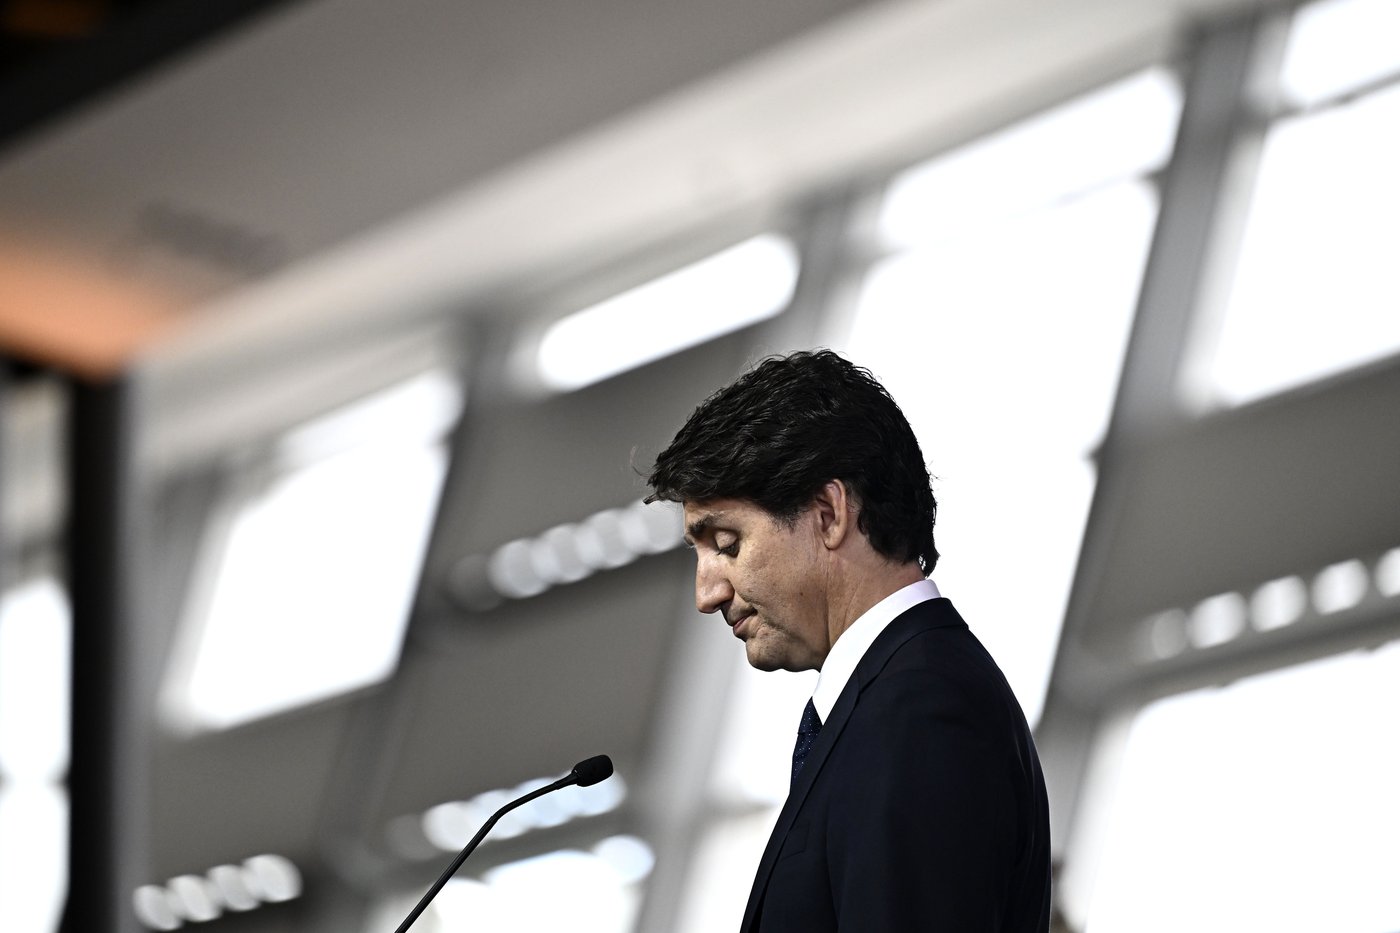 Deux Albertains accusés d’avoir proféré des menaces de mort contre Justin Trudeau